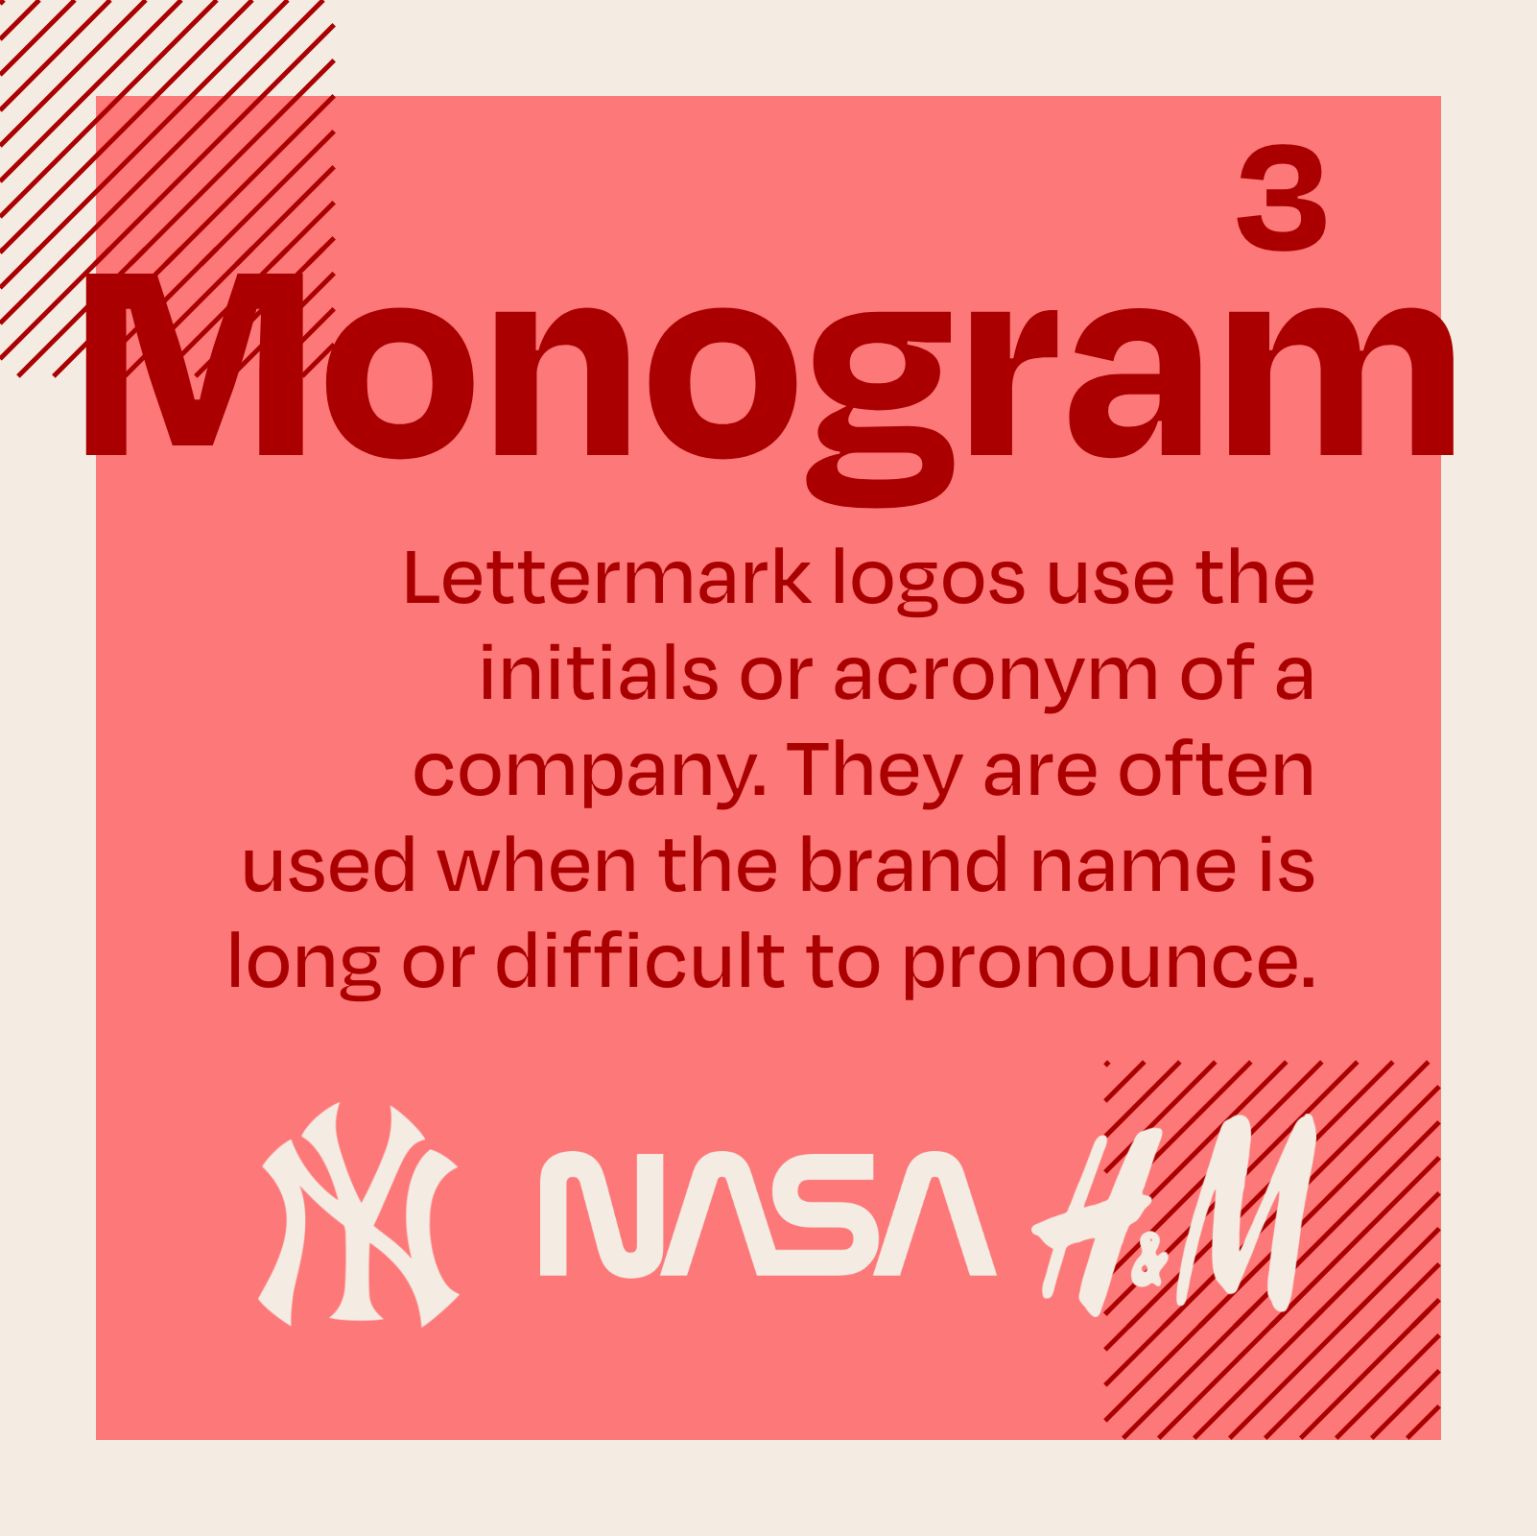 Types Of Logos - Monogram